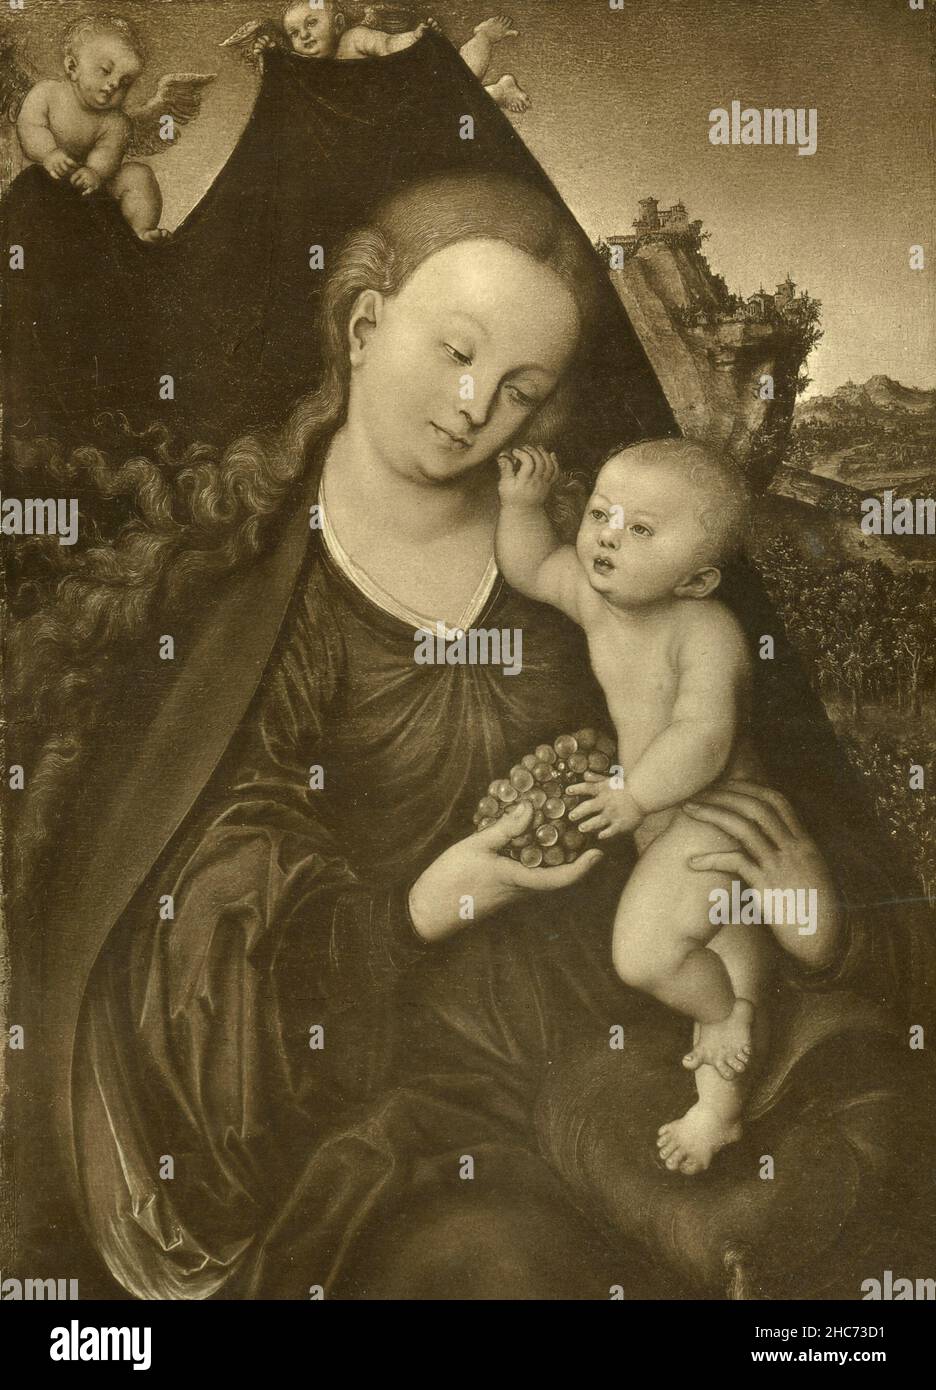 La Virgen María con el Niño, pintura del artista alemán Lucas Cranach, Múnich 1897 Foto de stock